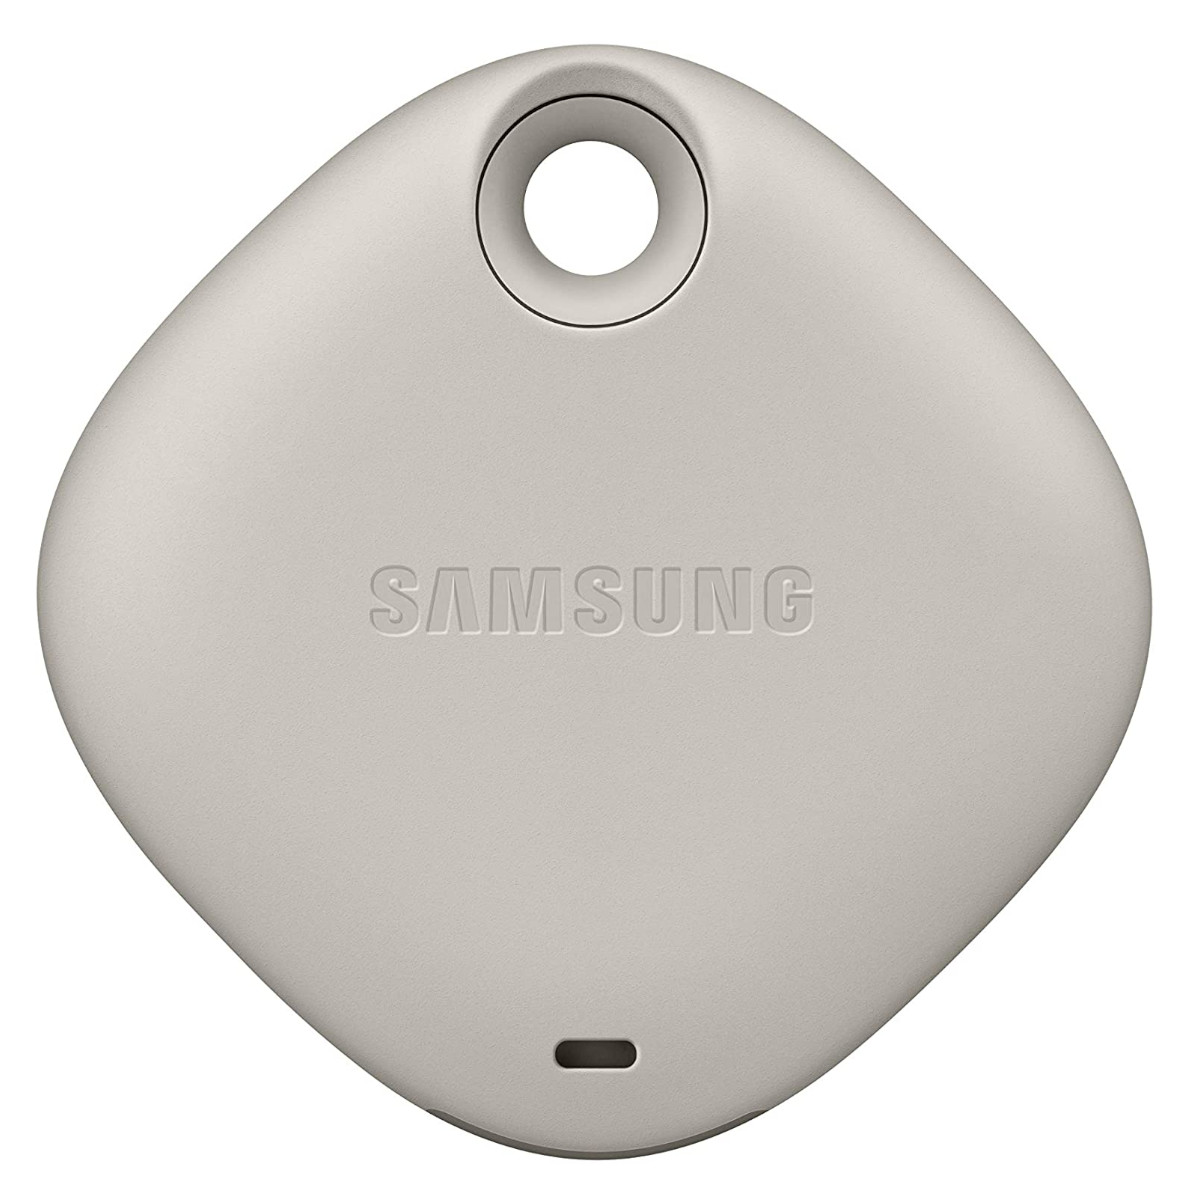 Samsung Smart Tag Localizador Bluetooth Llaves Objetos Avena